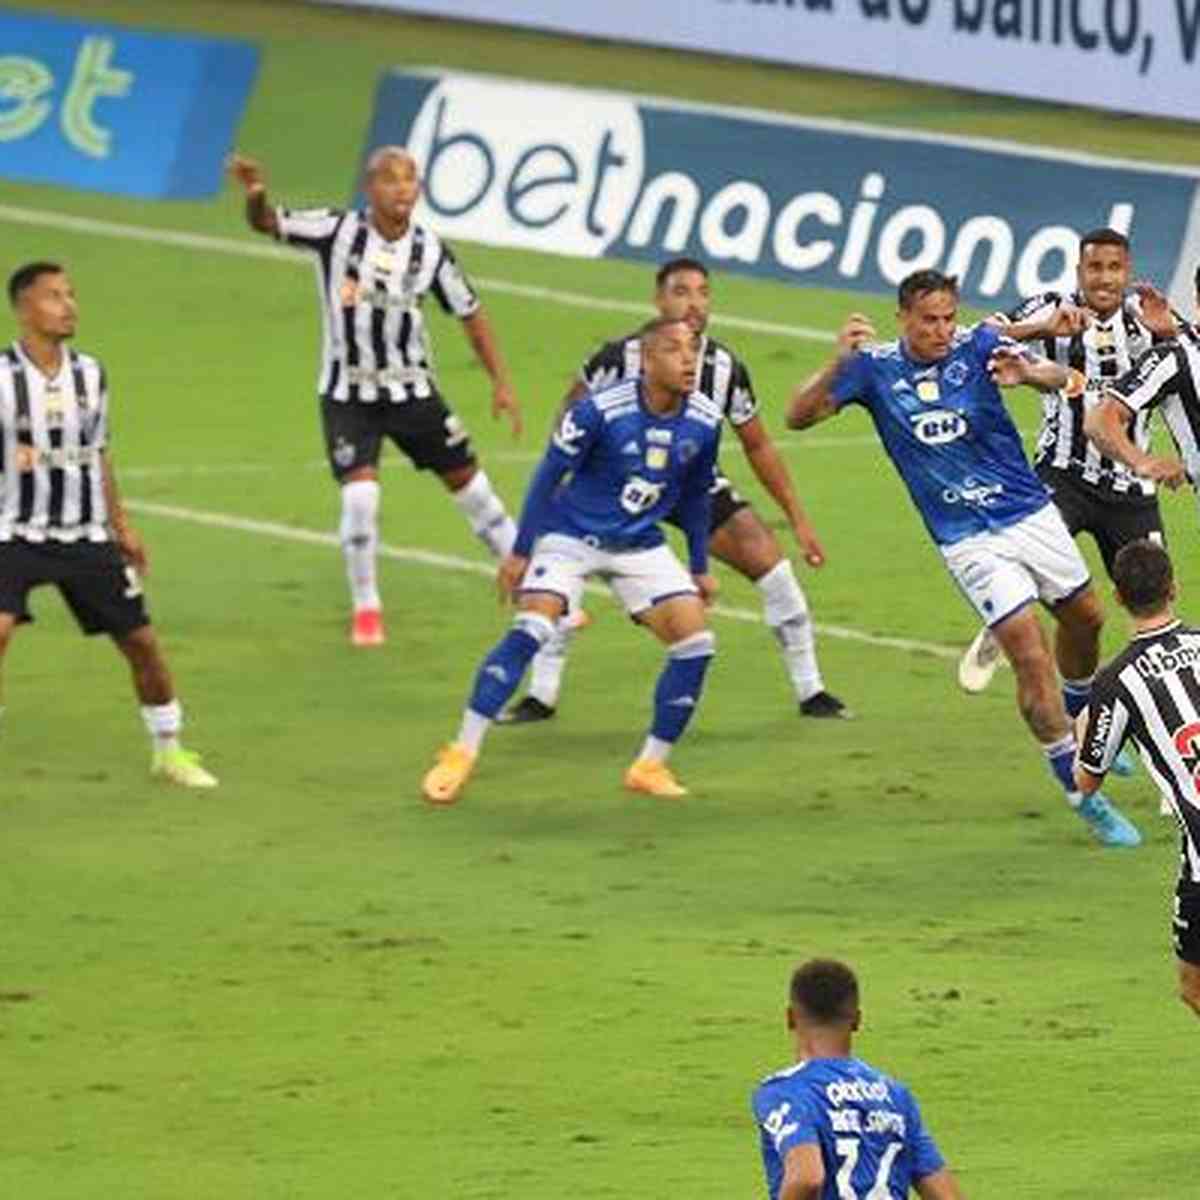 Casas de aposta apontam Atlético favoritaço no clássico contra o Cruzeiro -  Superesportes